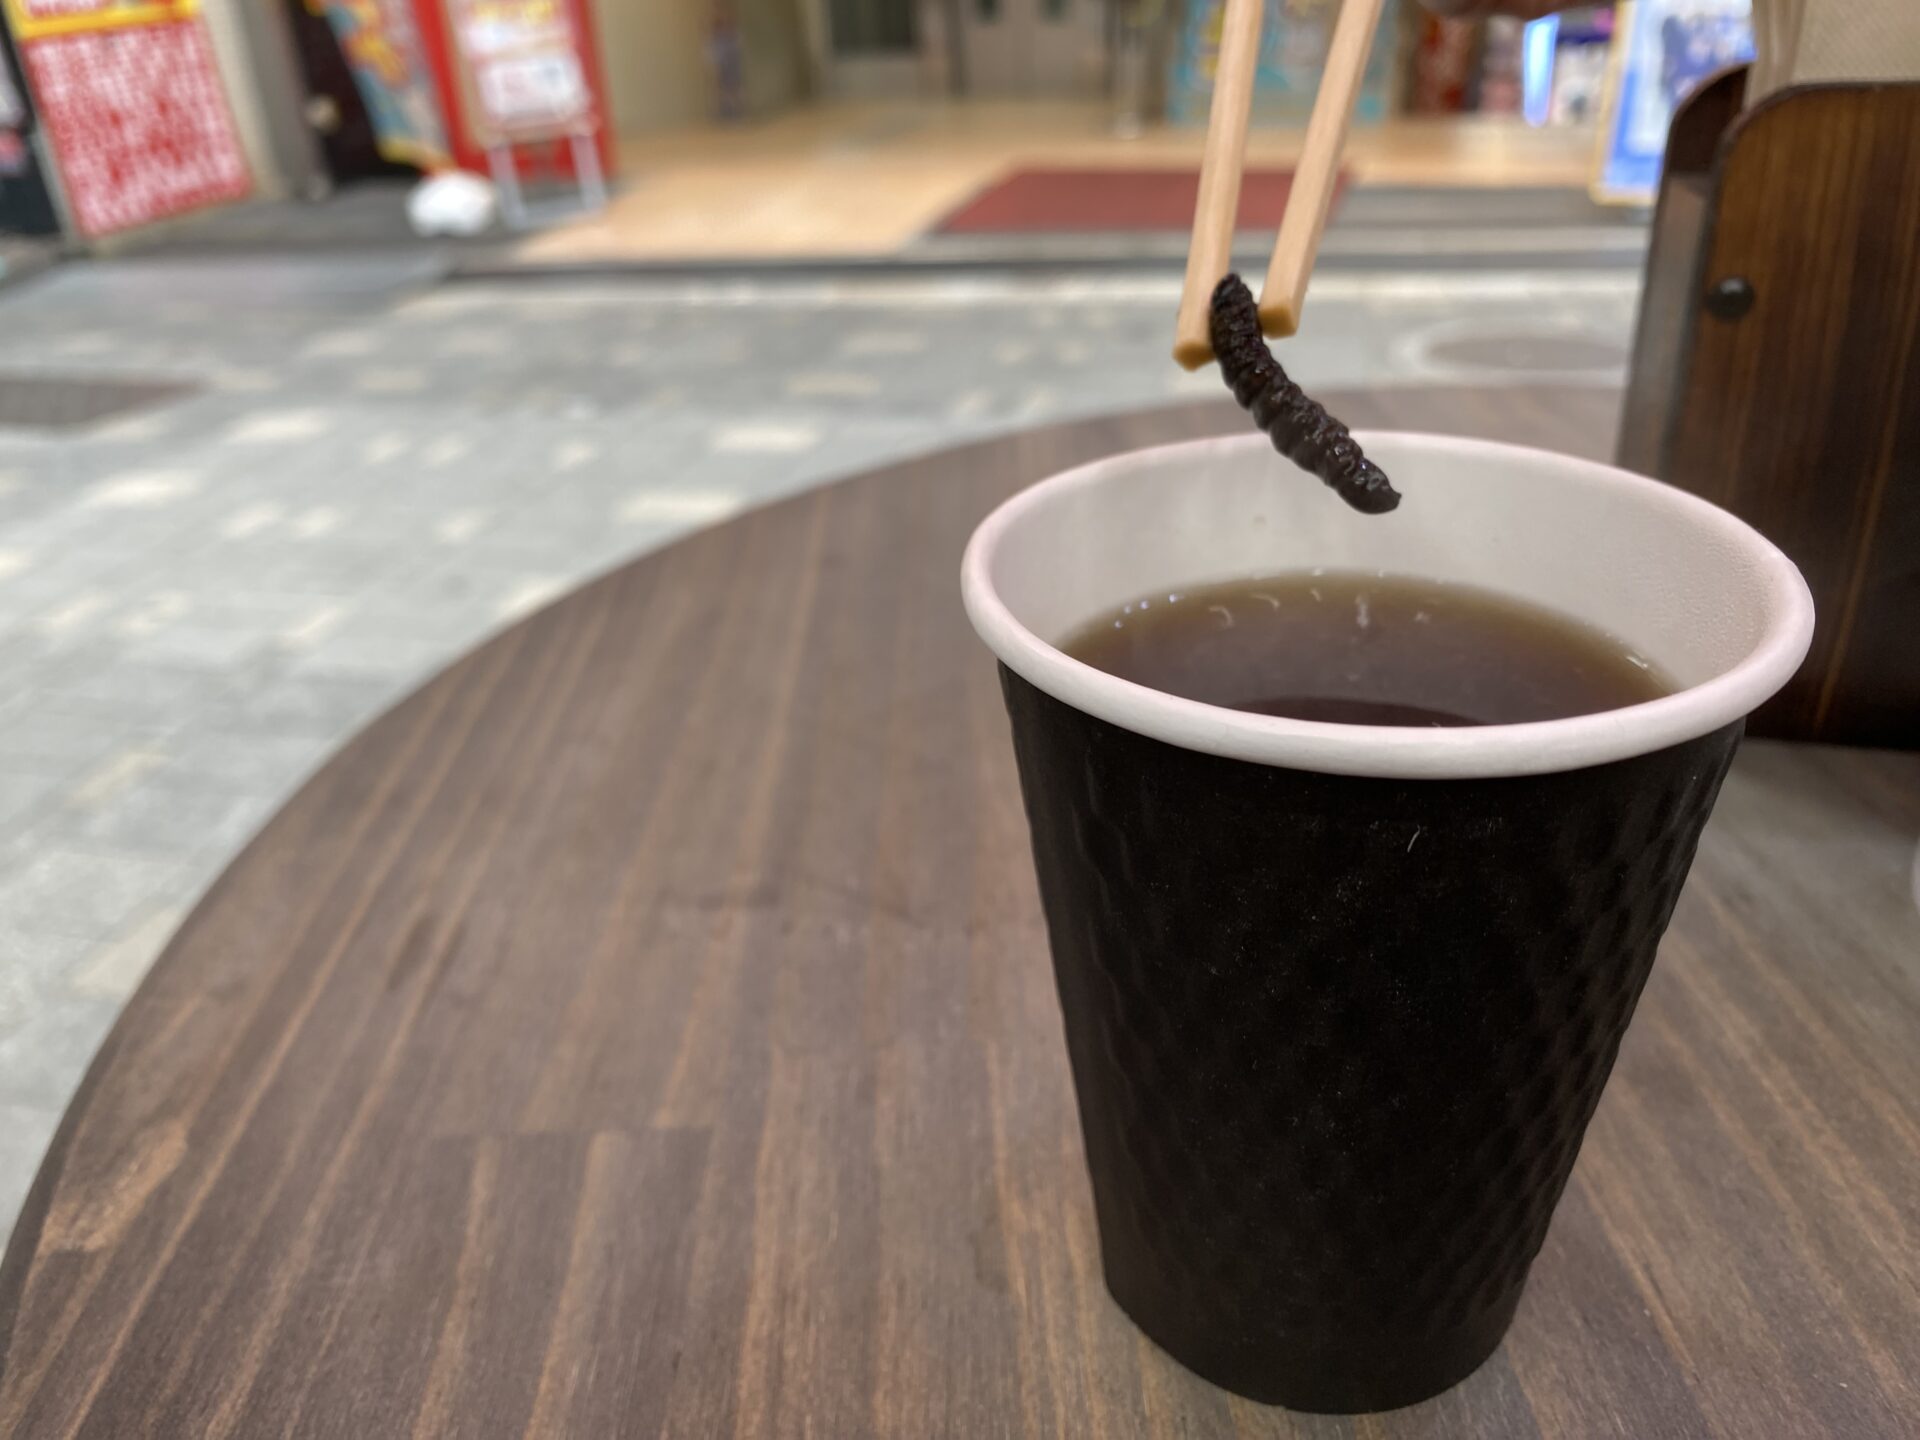 サクラケムシ紅茶のなかからケムシを箸でとりだした写真。すうせんちていどのありのままのすがたのサクラケムシのしろっぷづけが１匹ハイっている